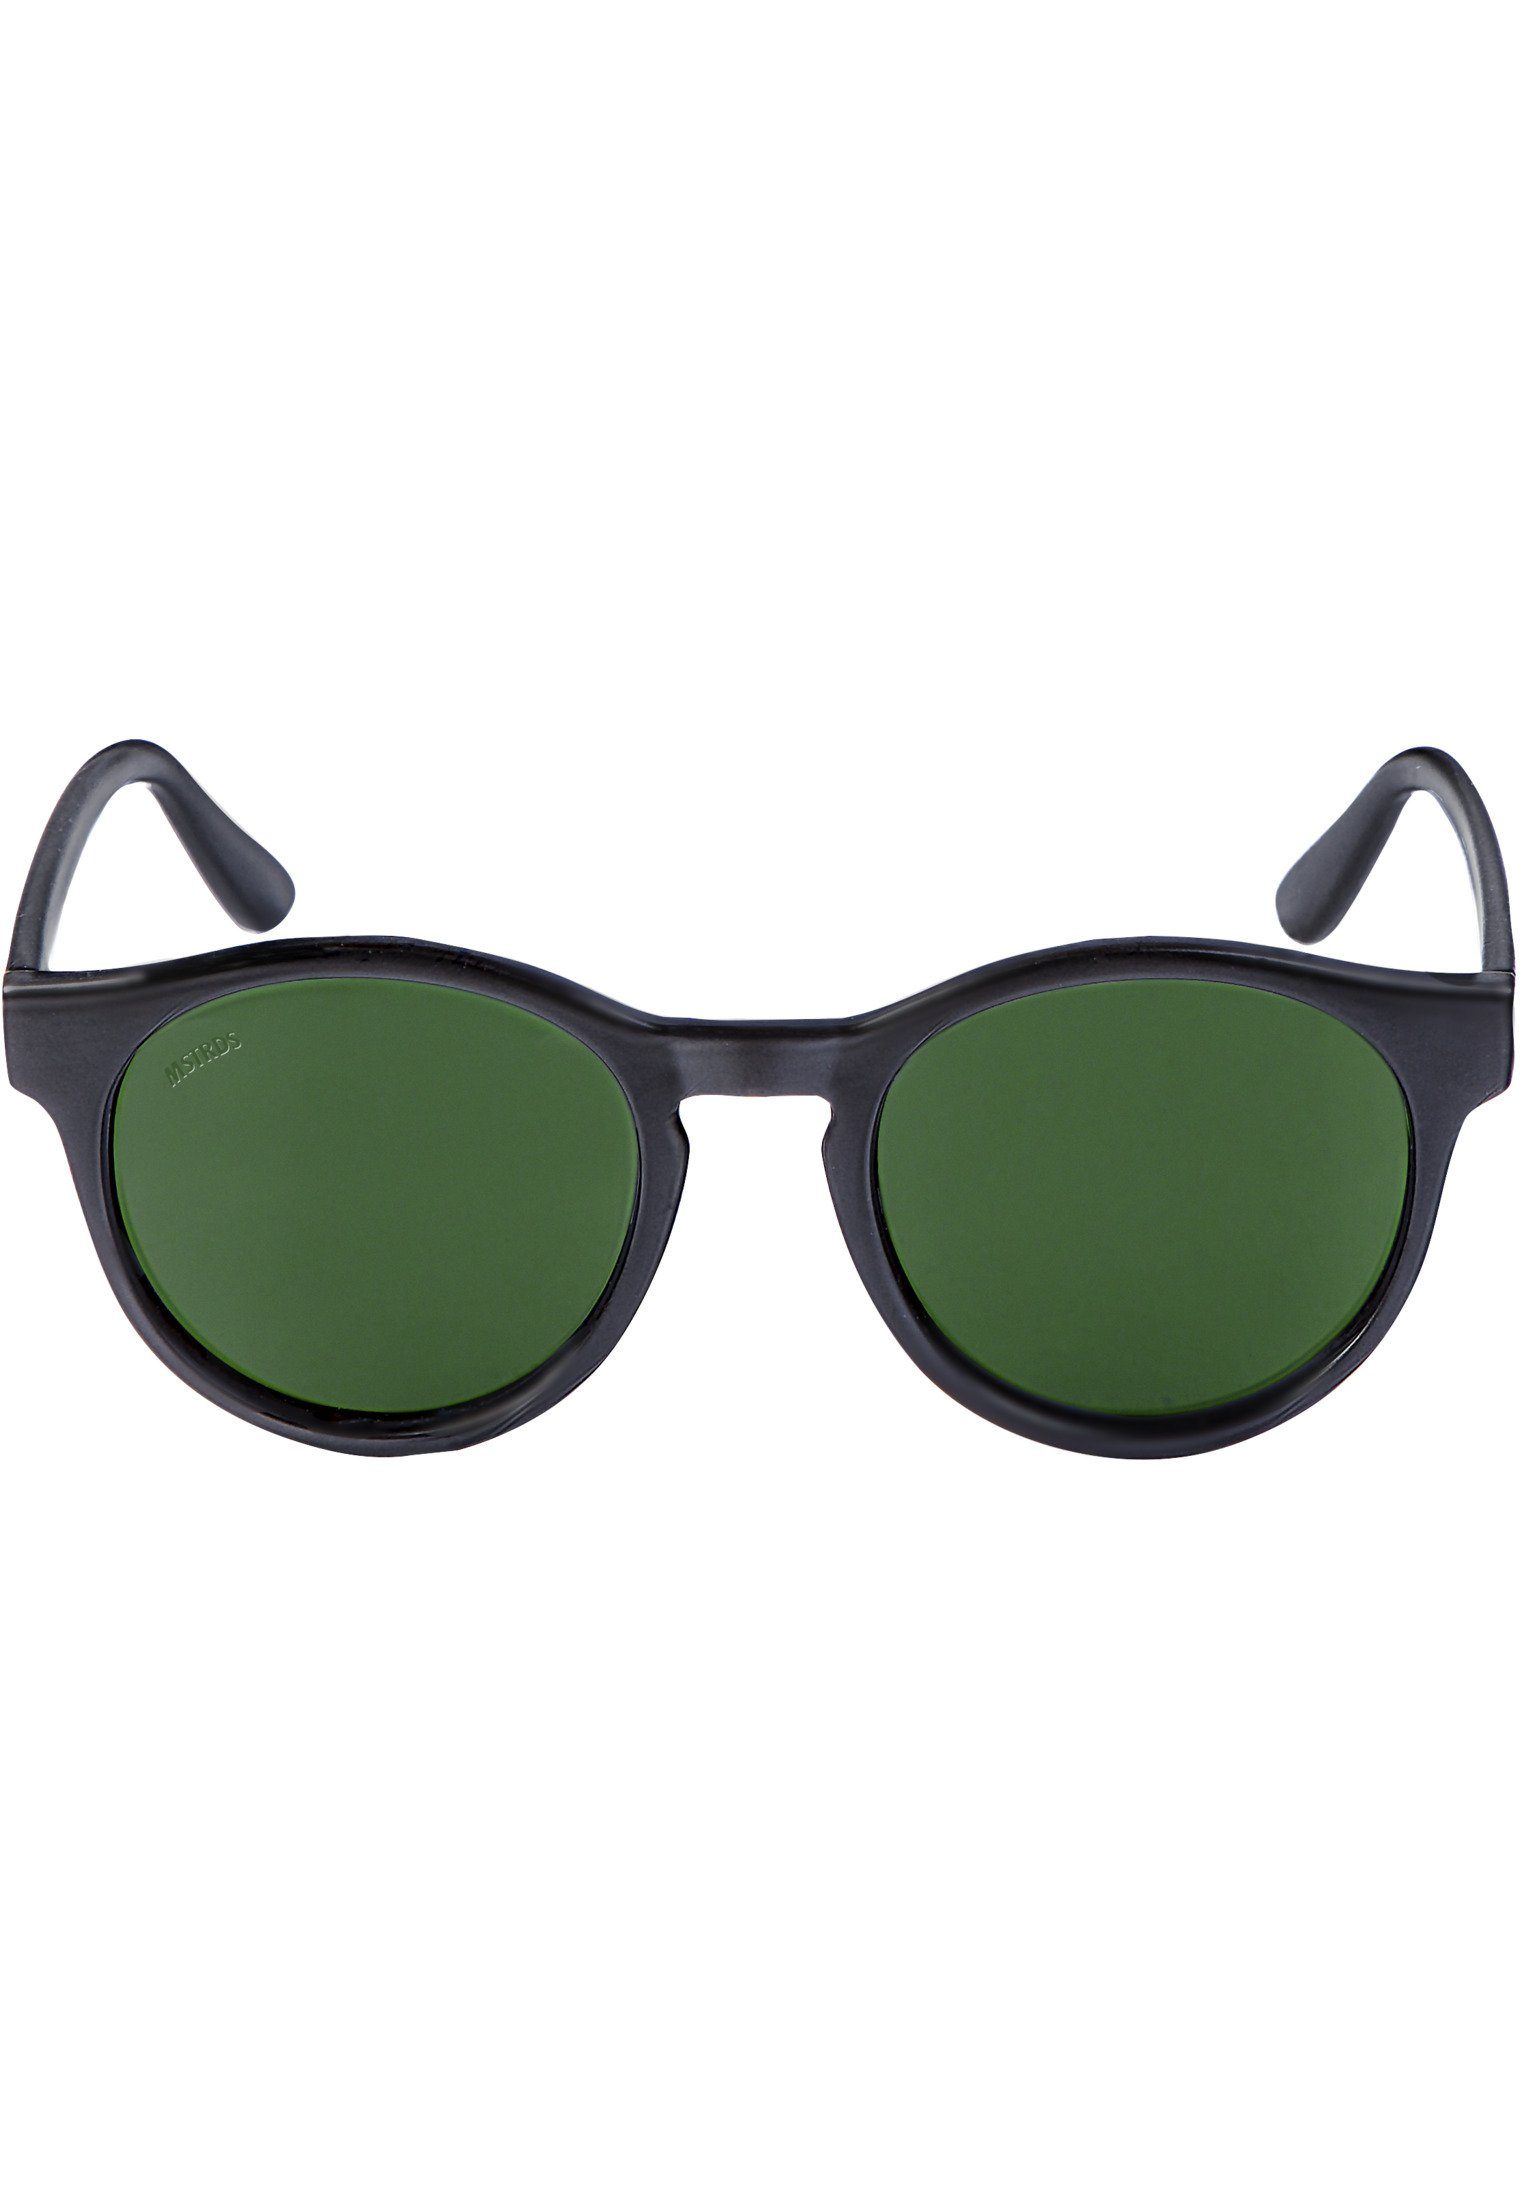 Sunglasses Sunrise MSTRDS blk/grn Accessoires Sonnenbrille